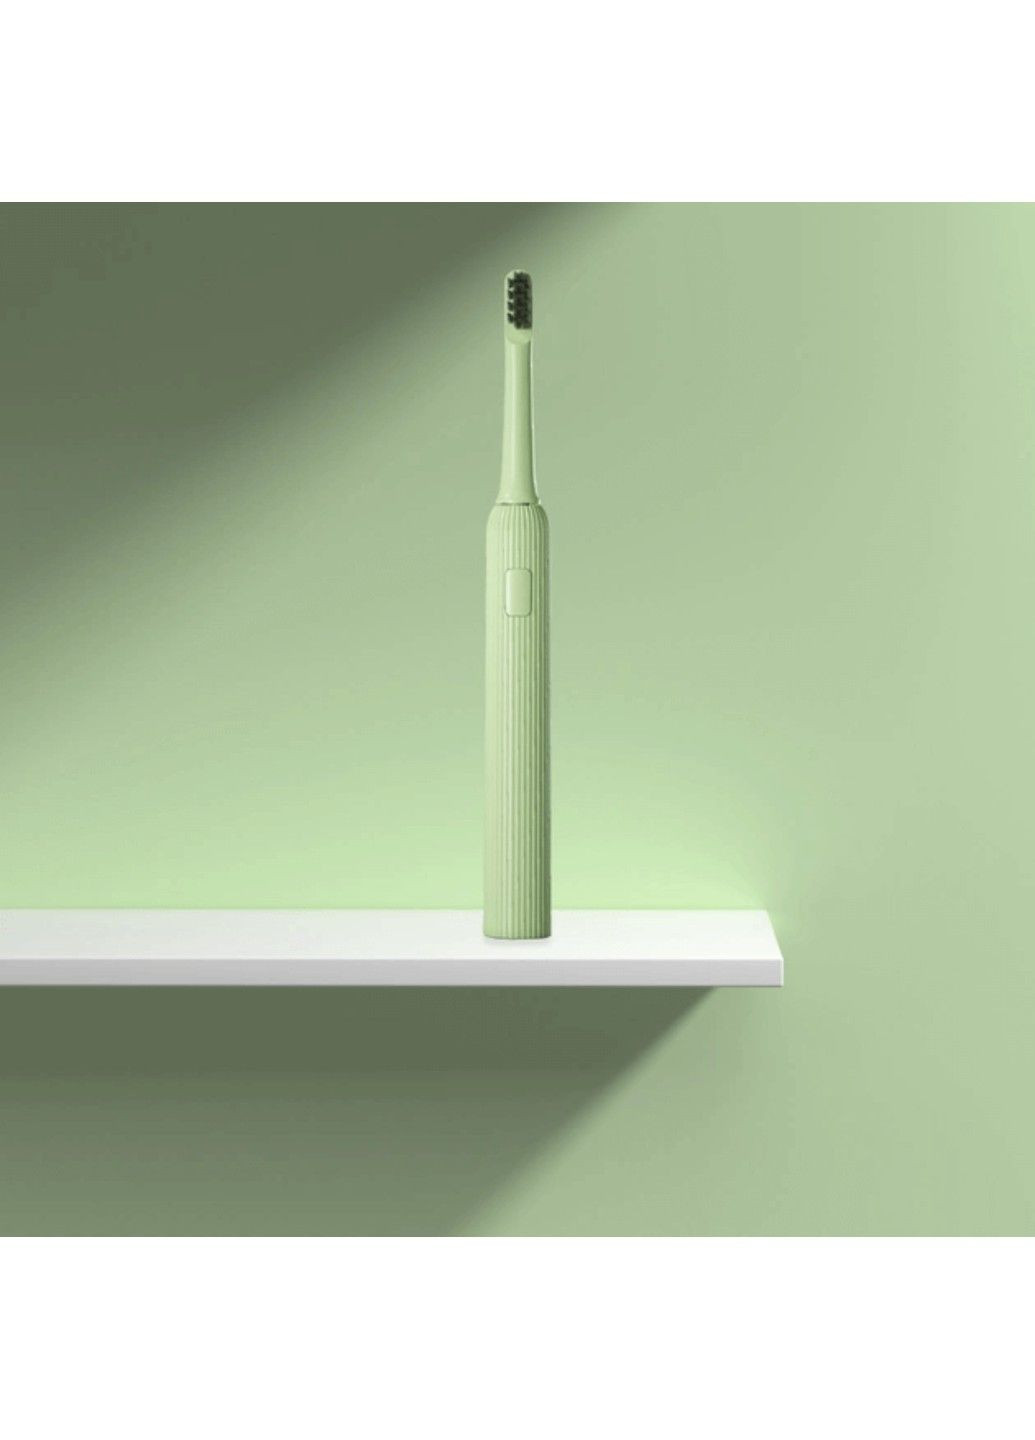 Электрическая зубная щетка Xiaomi Mint5 Sonik Green Enchen (282713842)